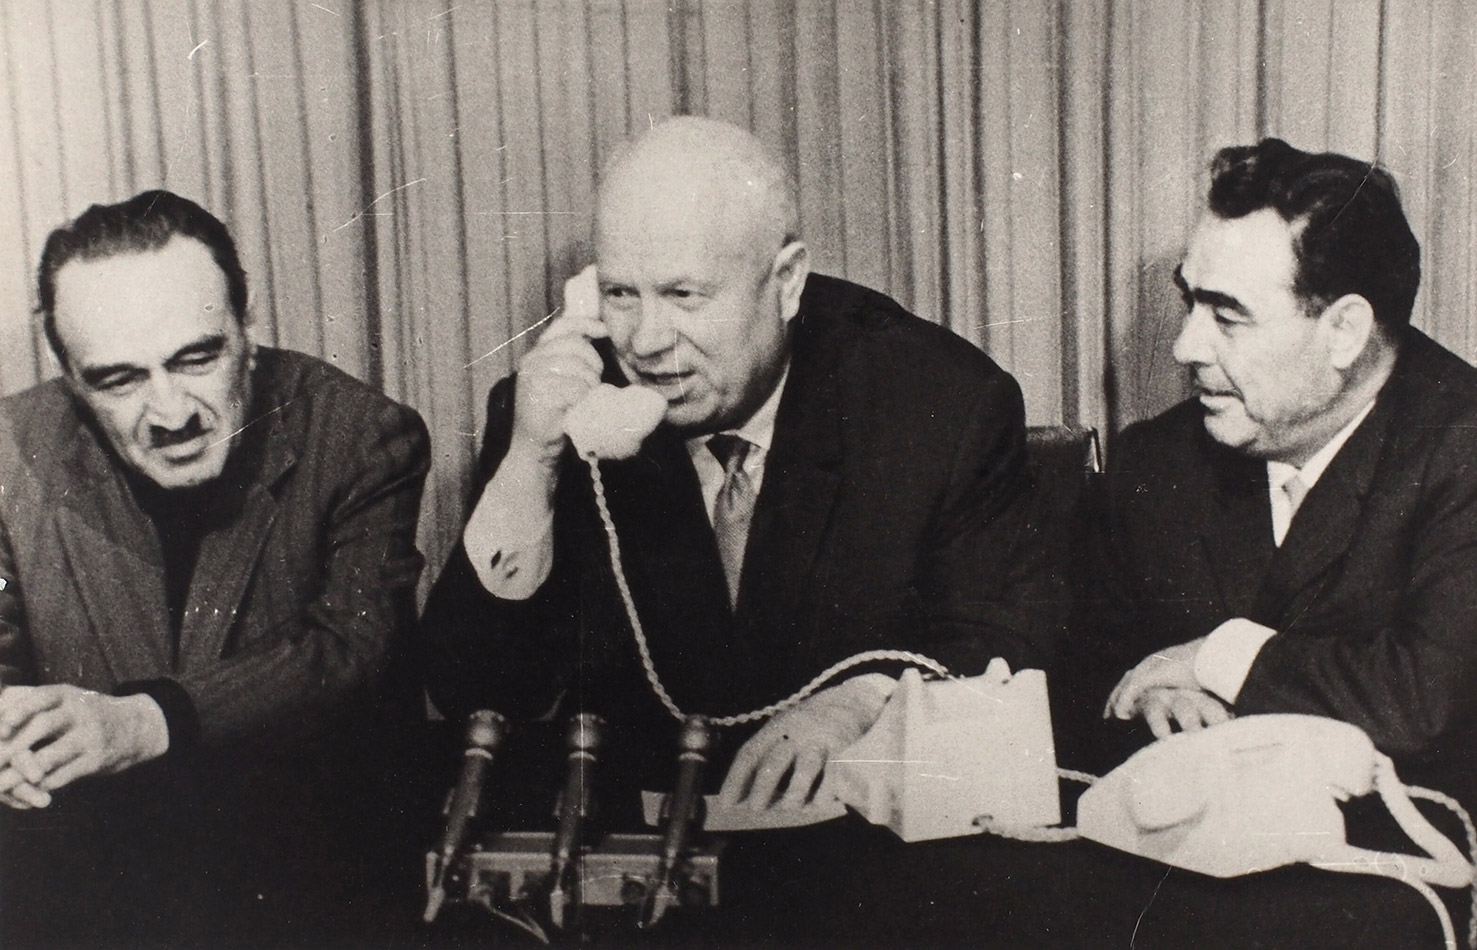 Фотография «Хрущев, Микоян, Брежнев. Разговор по телефону с космонавтами». М., 1961-1964.jpg